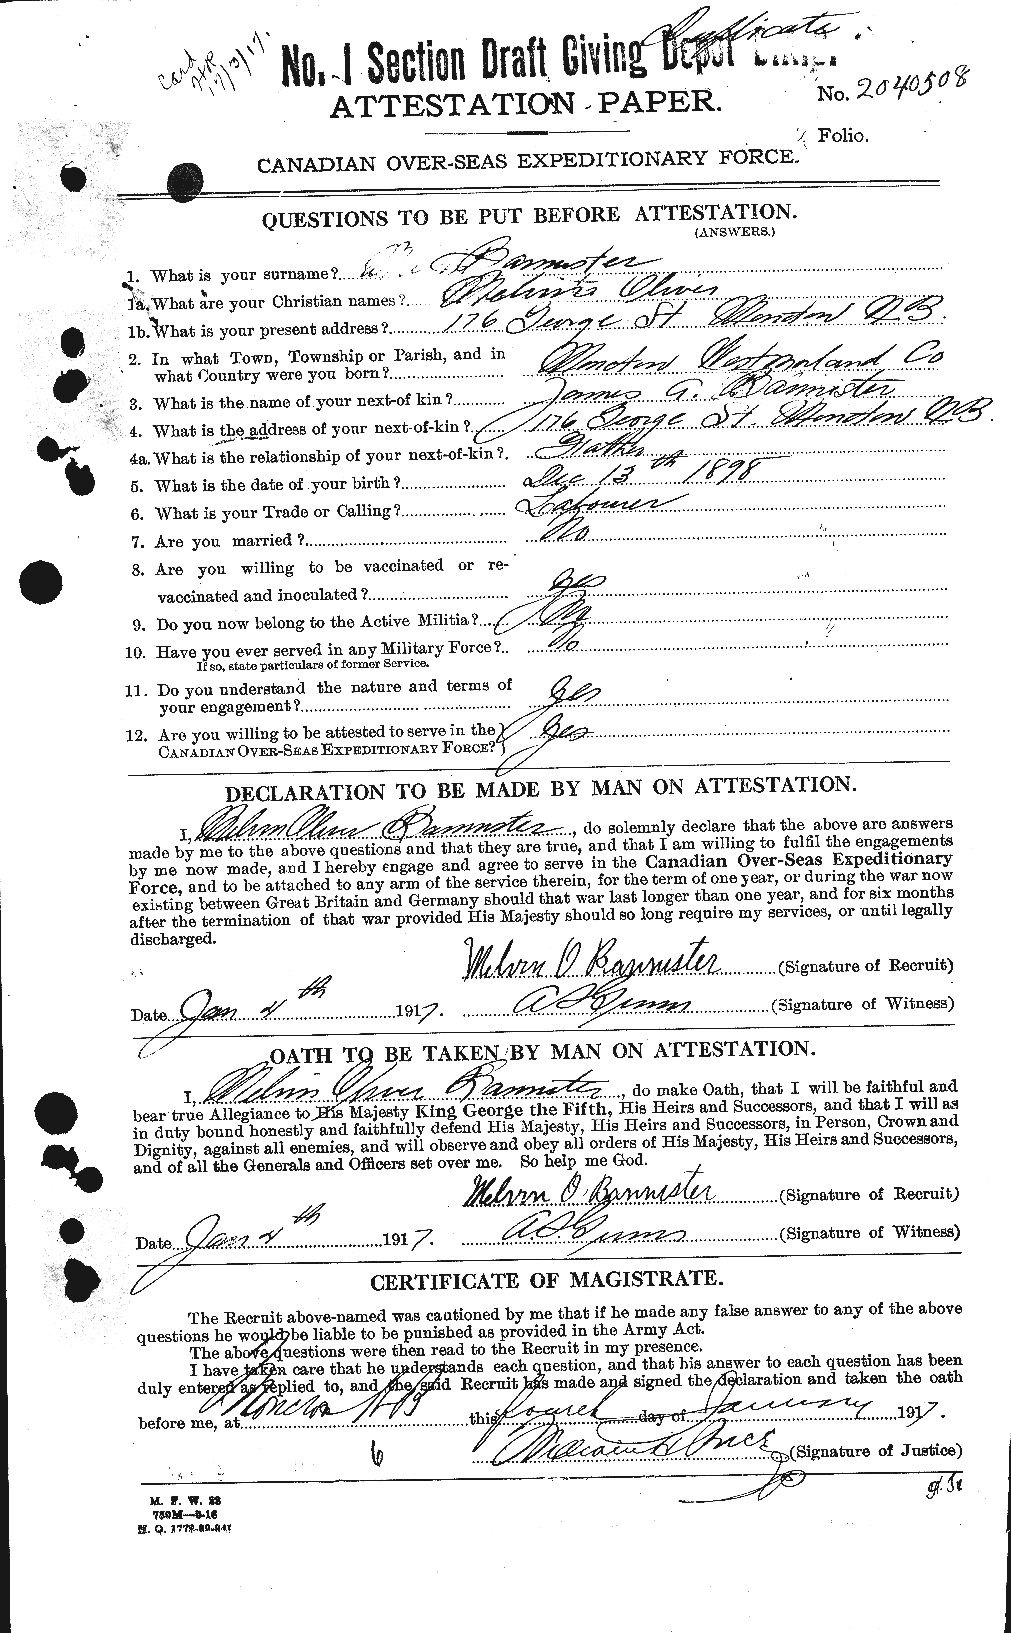 Dossiers du Personnel de la Première Guerre mondiale - CEC 224777a